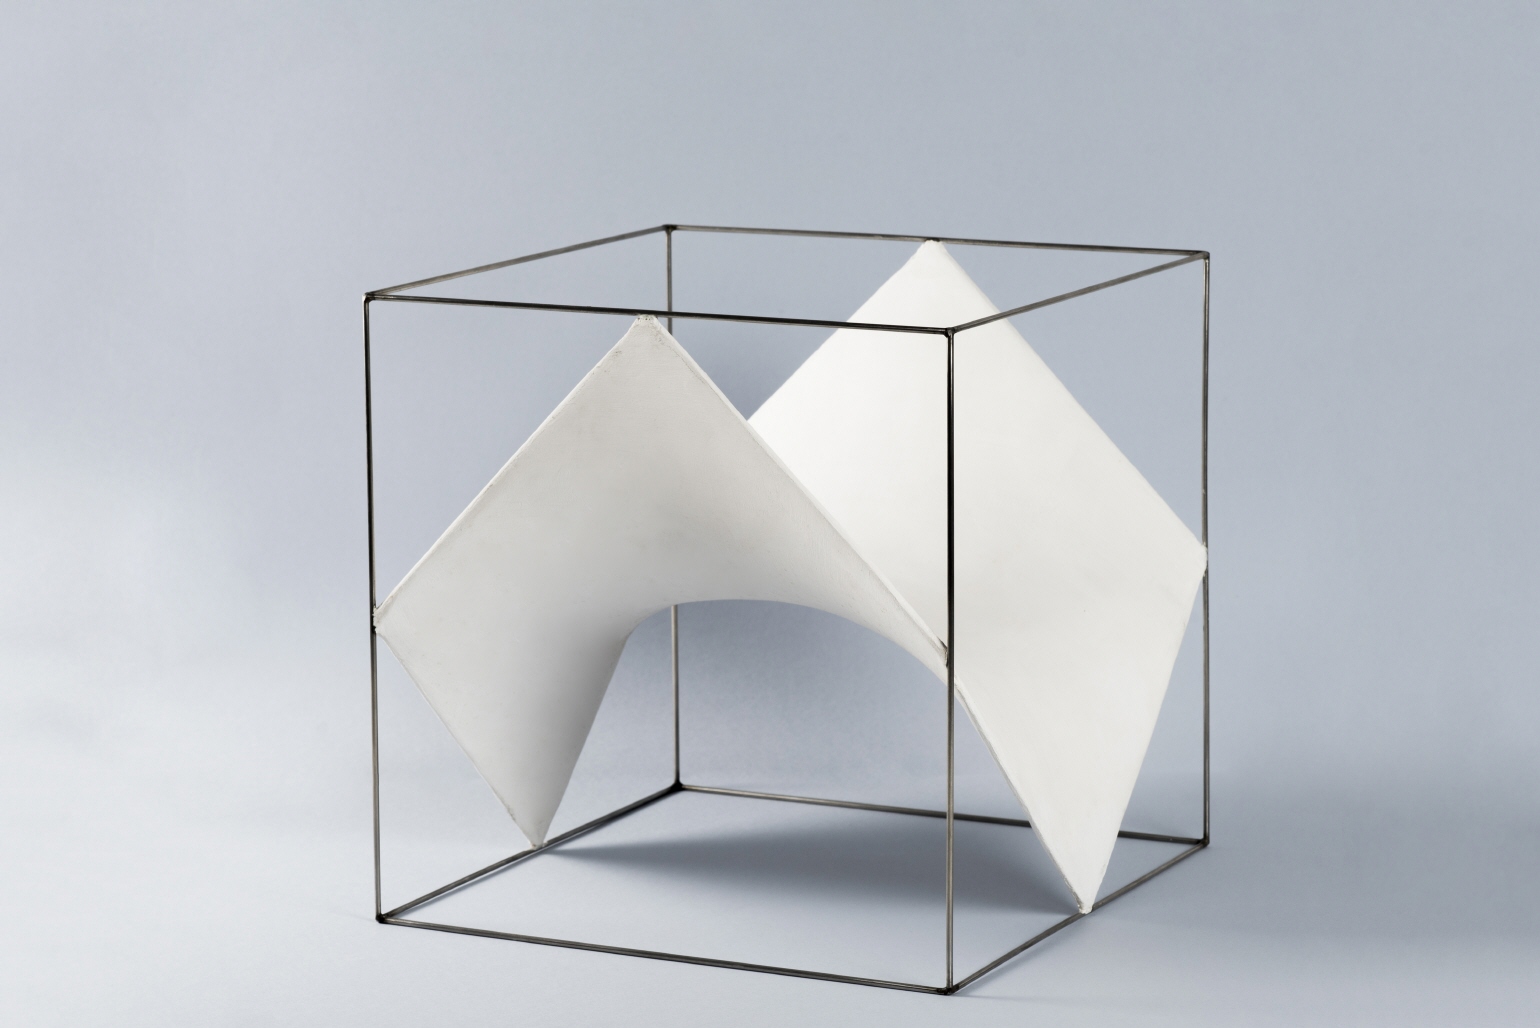 Cubo [División de un cubo por 6 paraboloides hiperbólicos], 1970